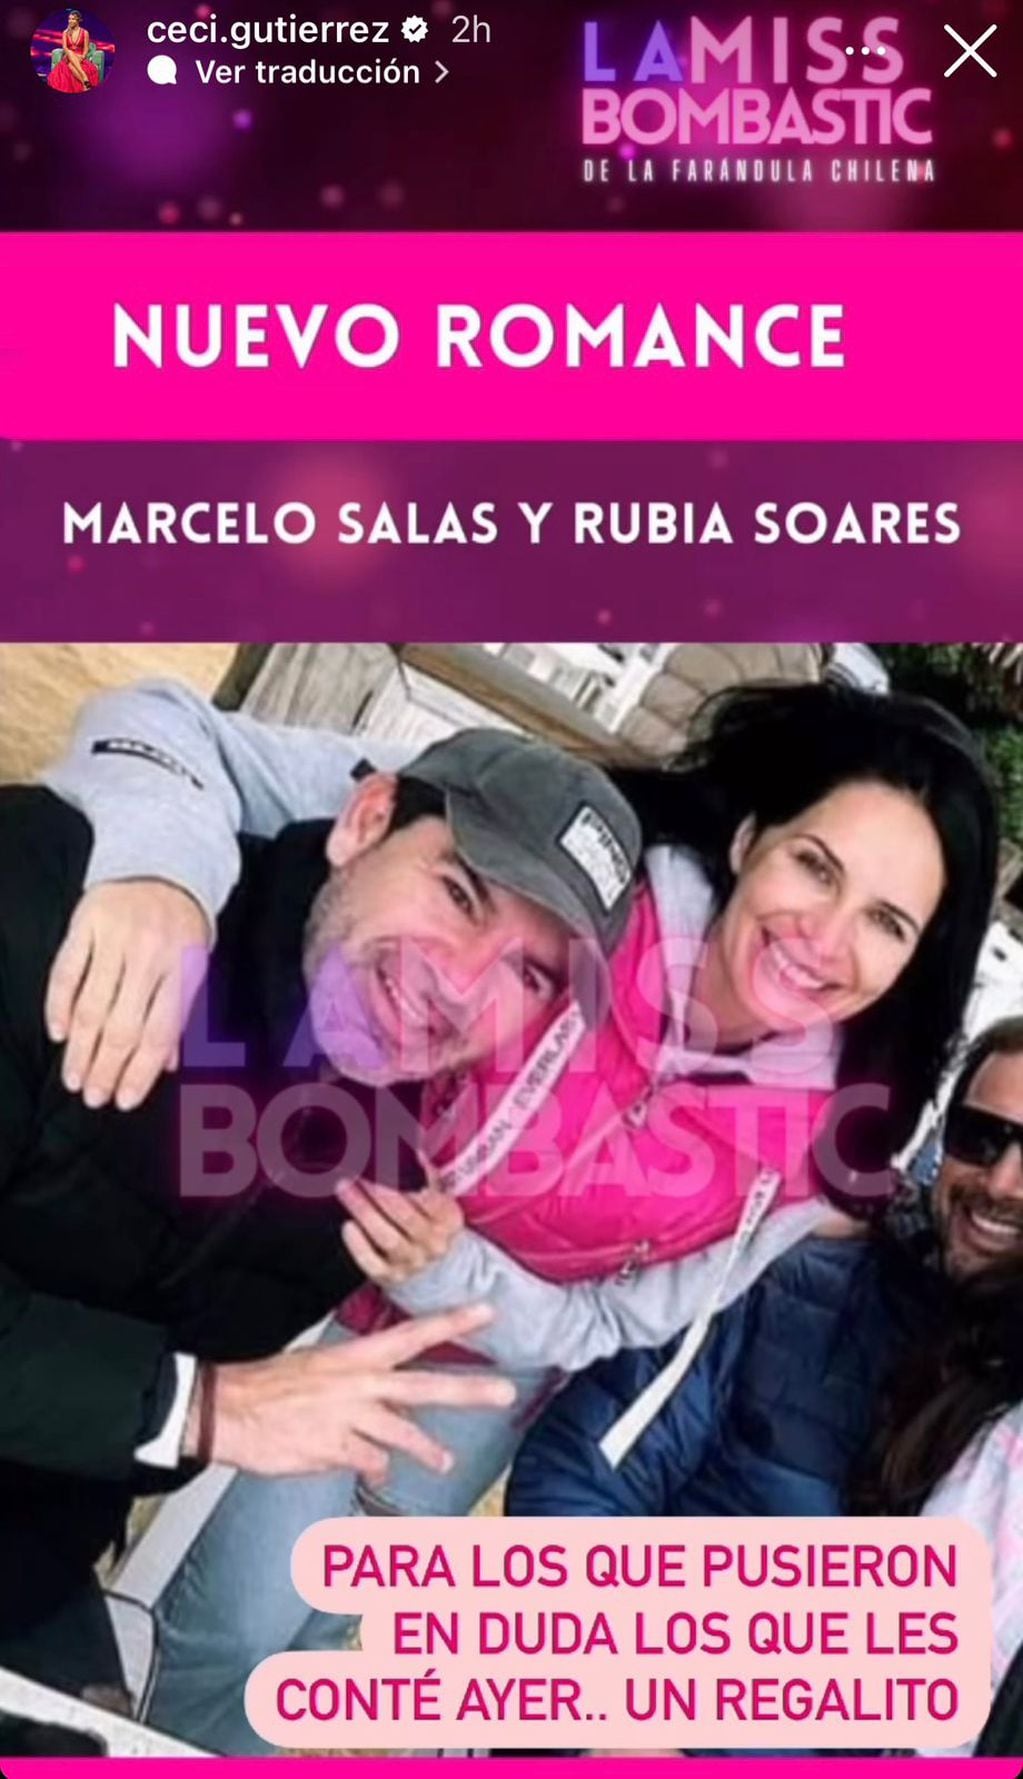 Cecilia Gutiérrez subió foto que confirmaría el romance de Marcelo Salas con Rubia Soares.